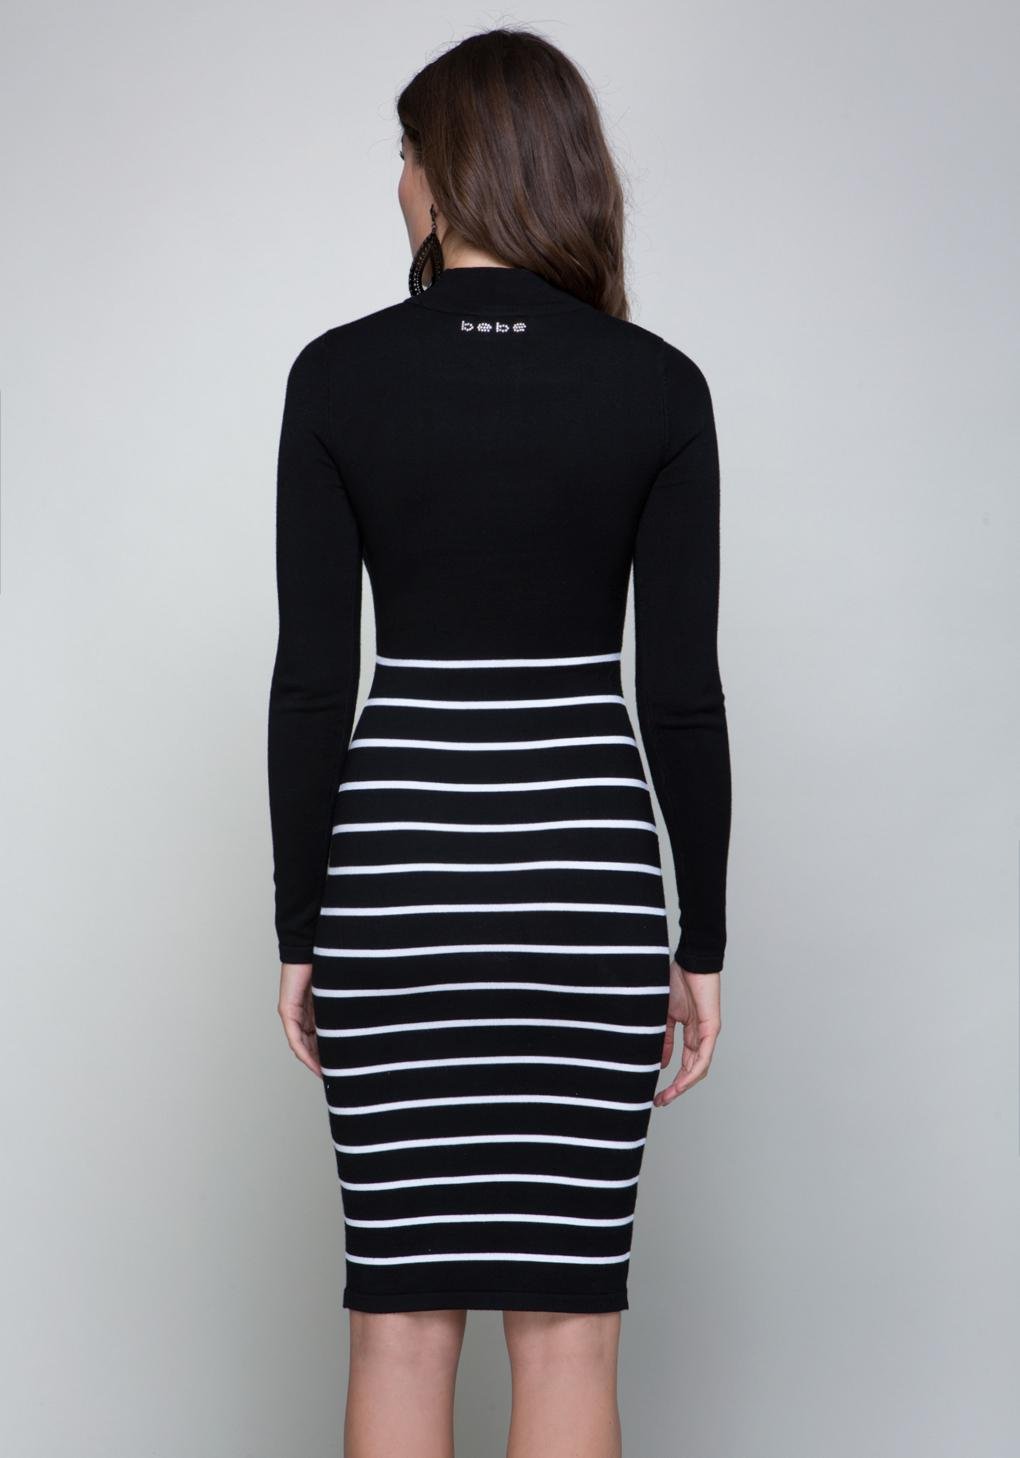 Download Lyst - Bebe Mock Neck Sweater Dress in Black